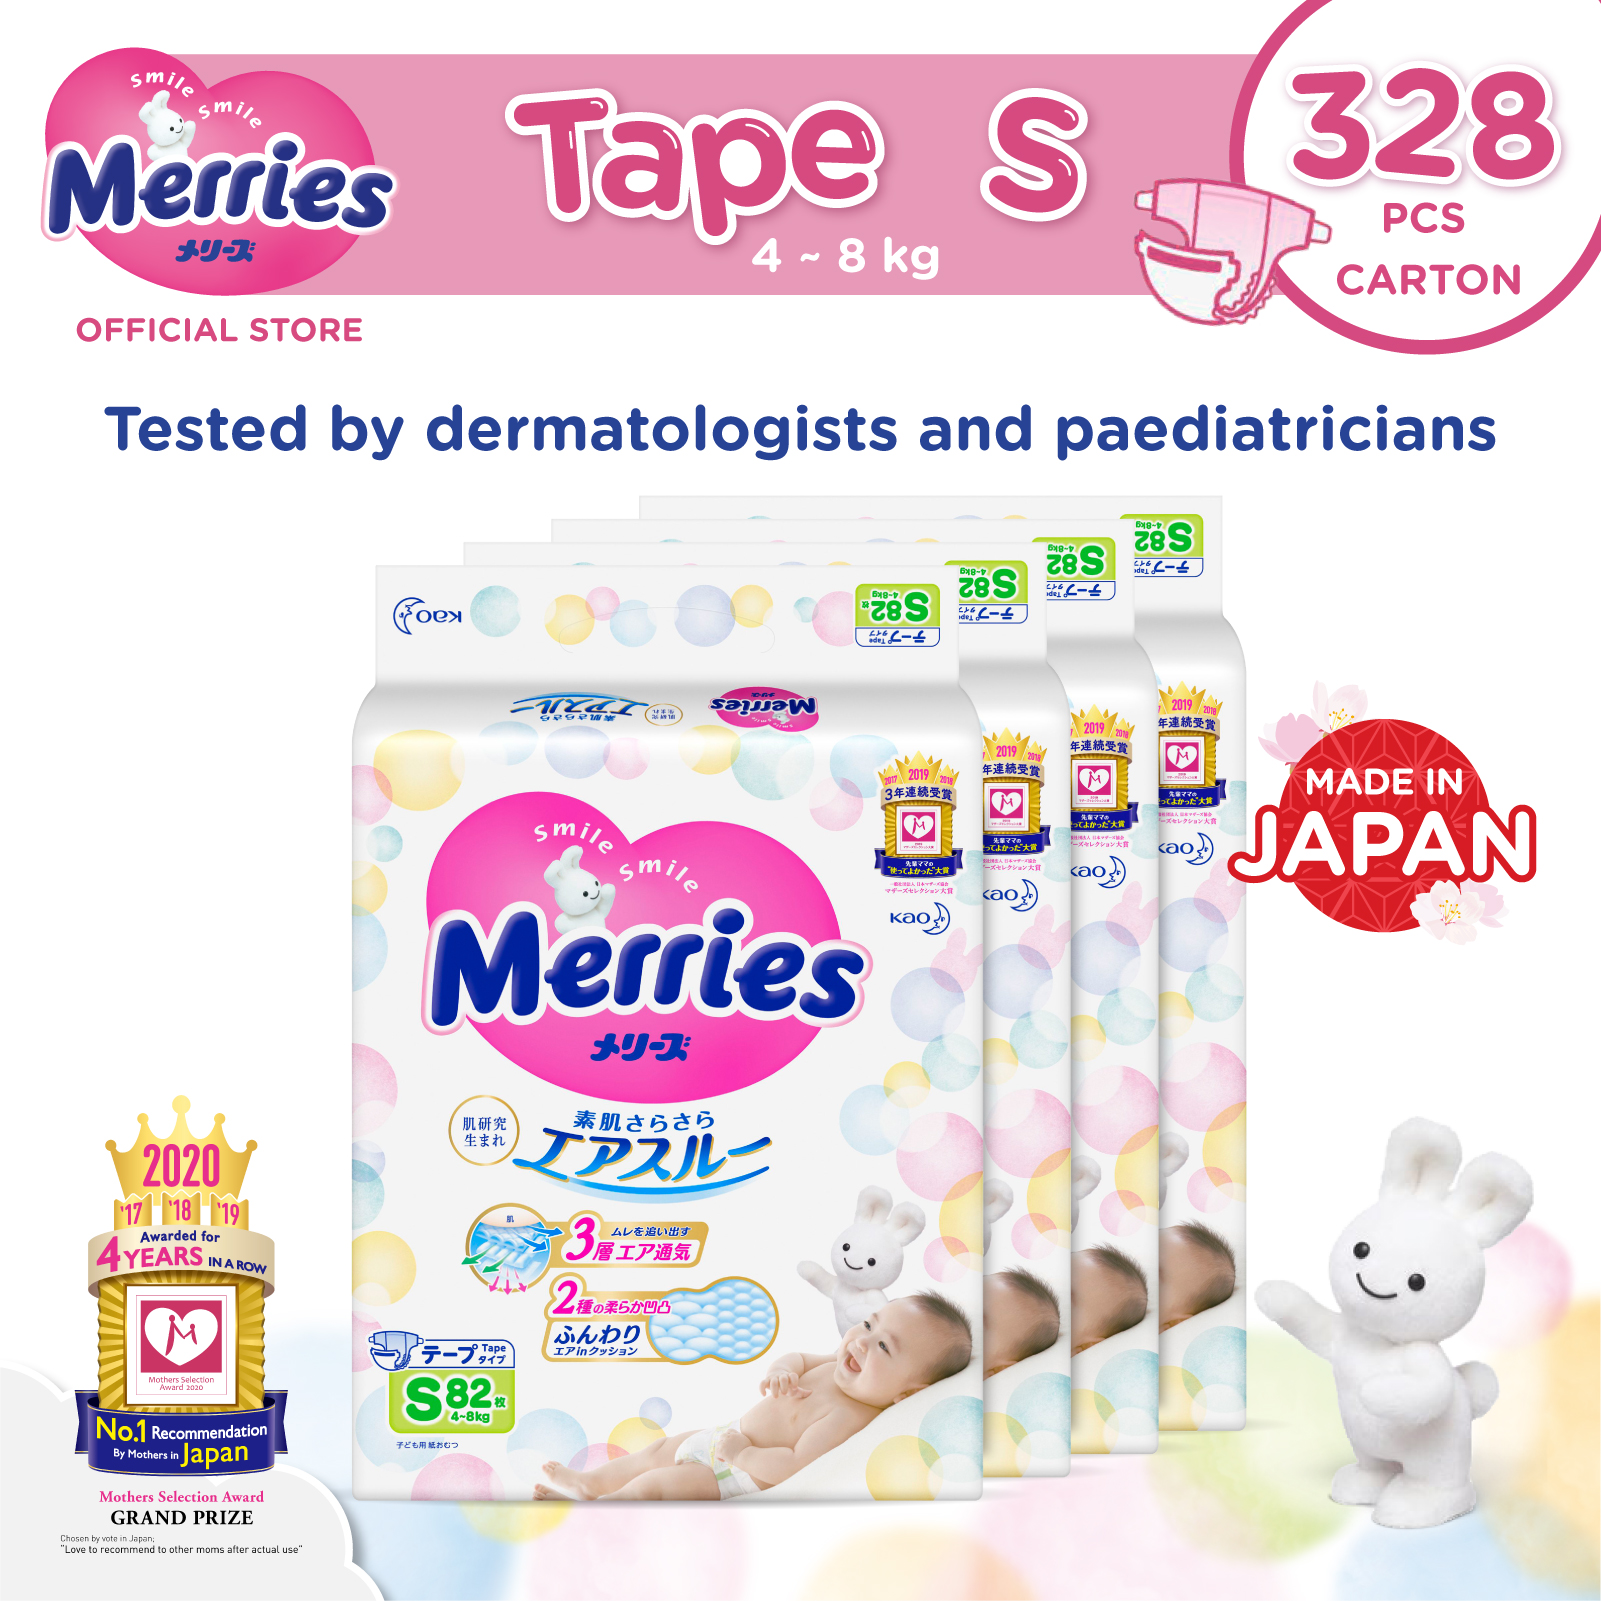 Merries Tape Diapers S82s x 4 packs